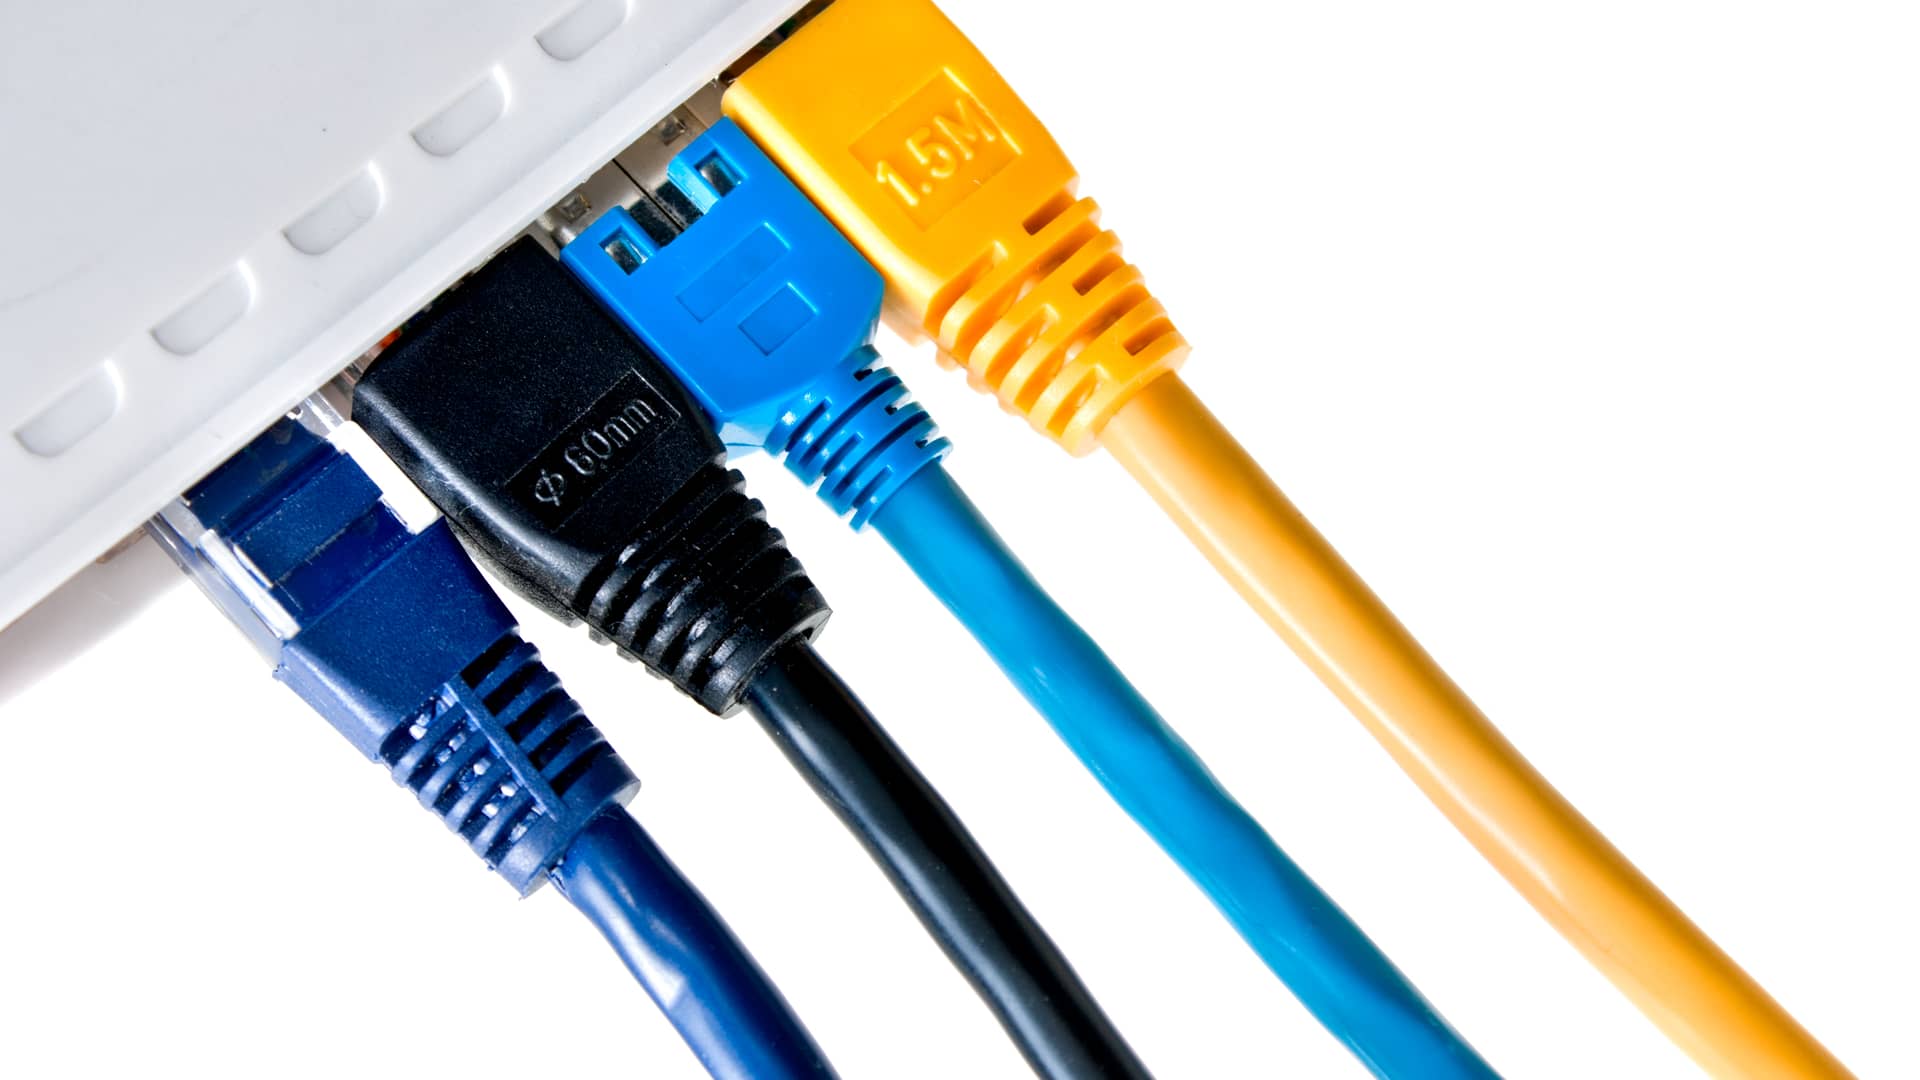 Abrir los puertos de tu router Orange mejorará tu conexión